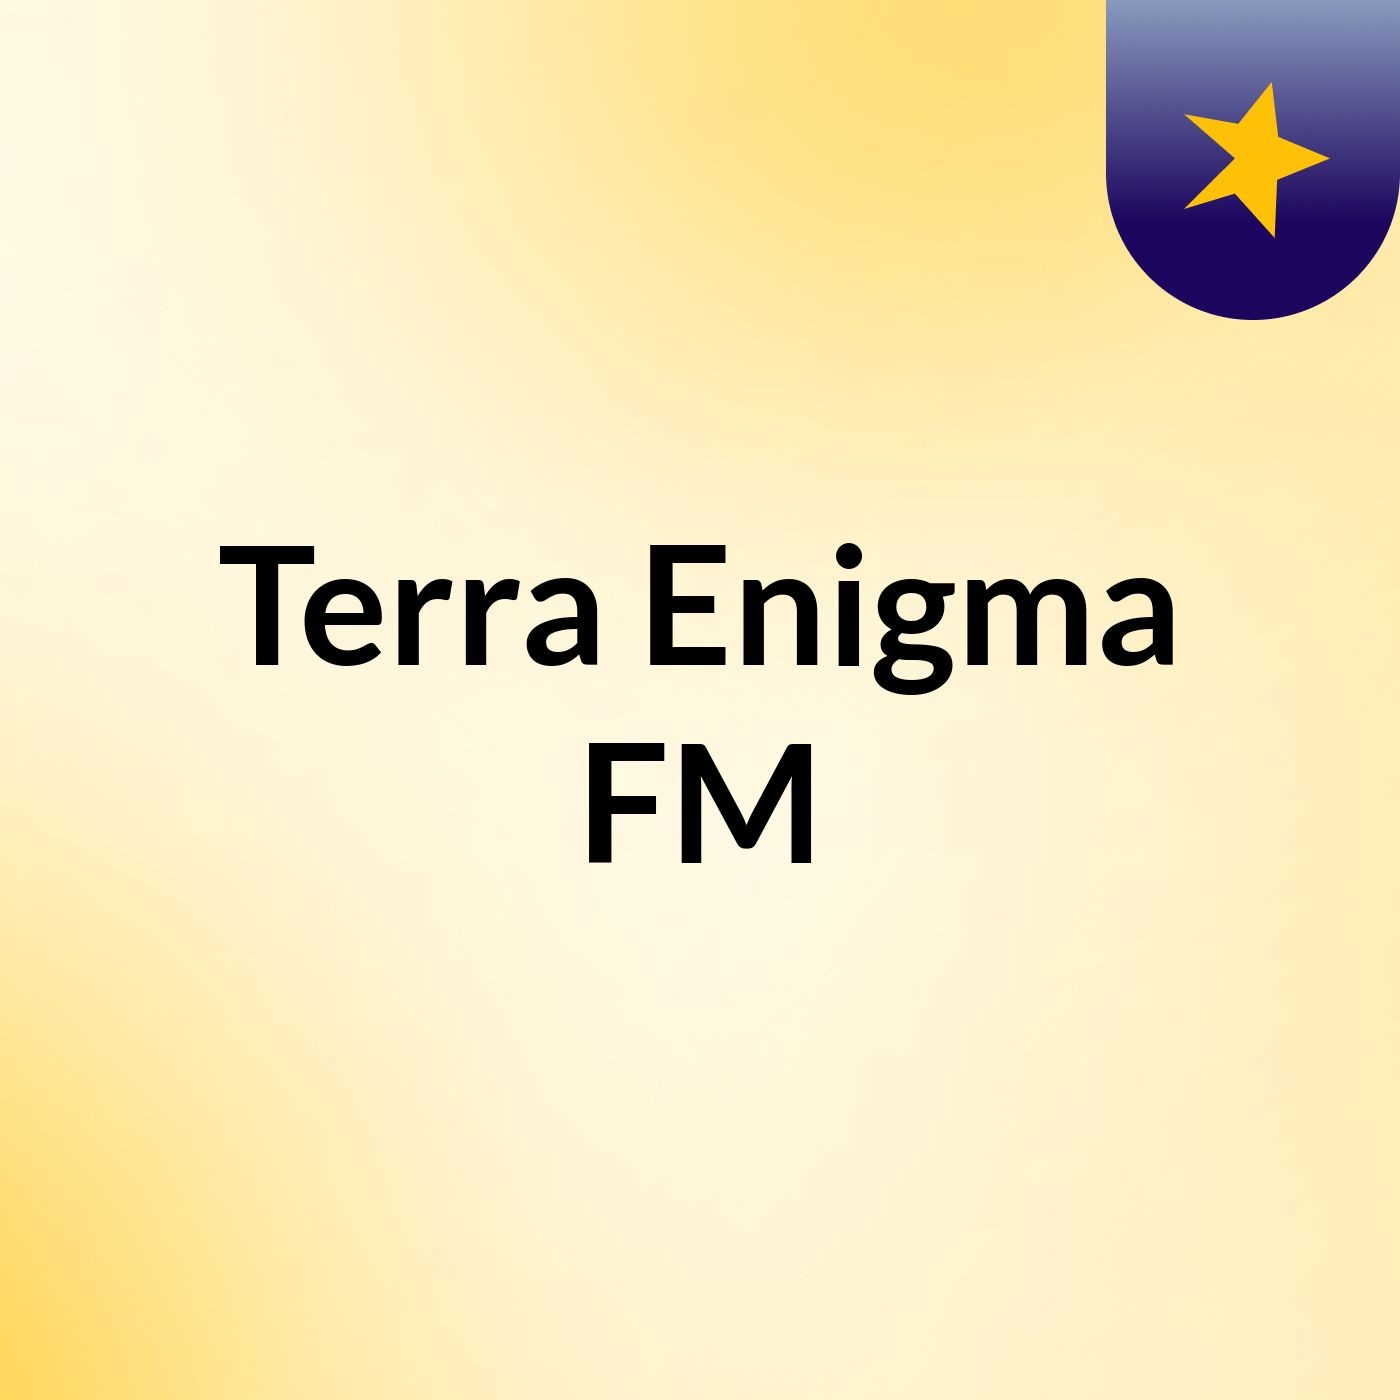 Terra Enigma FM